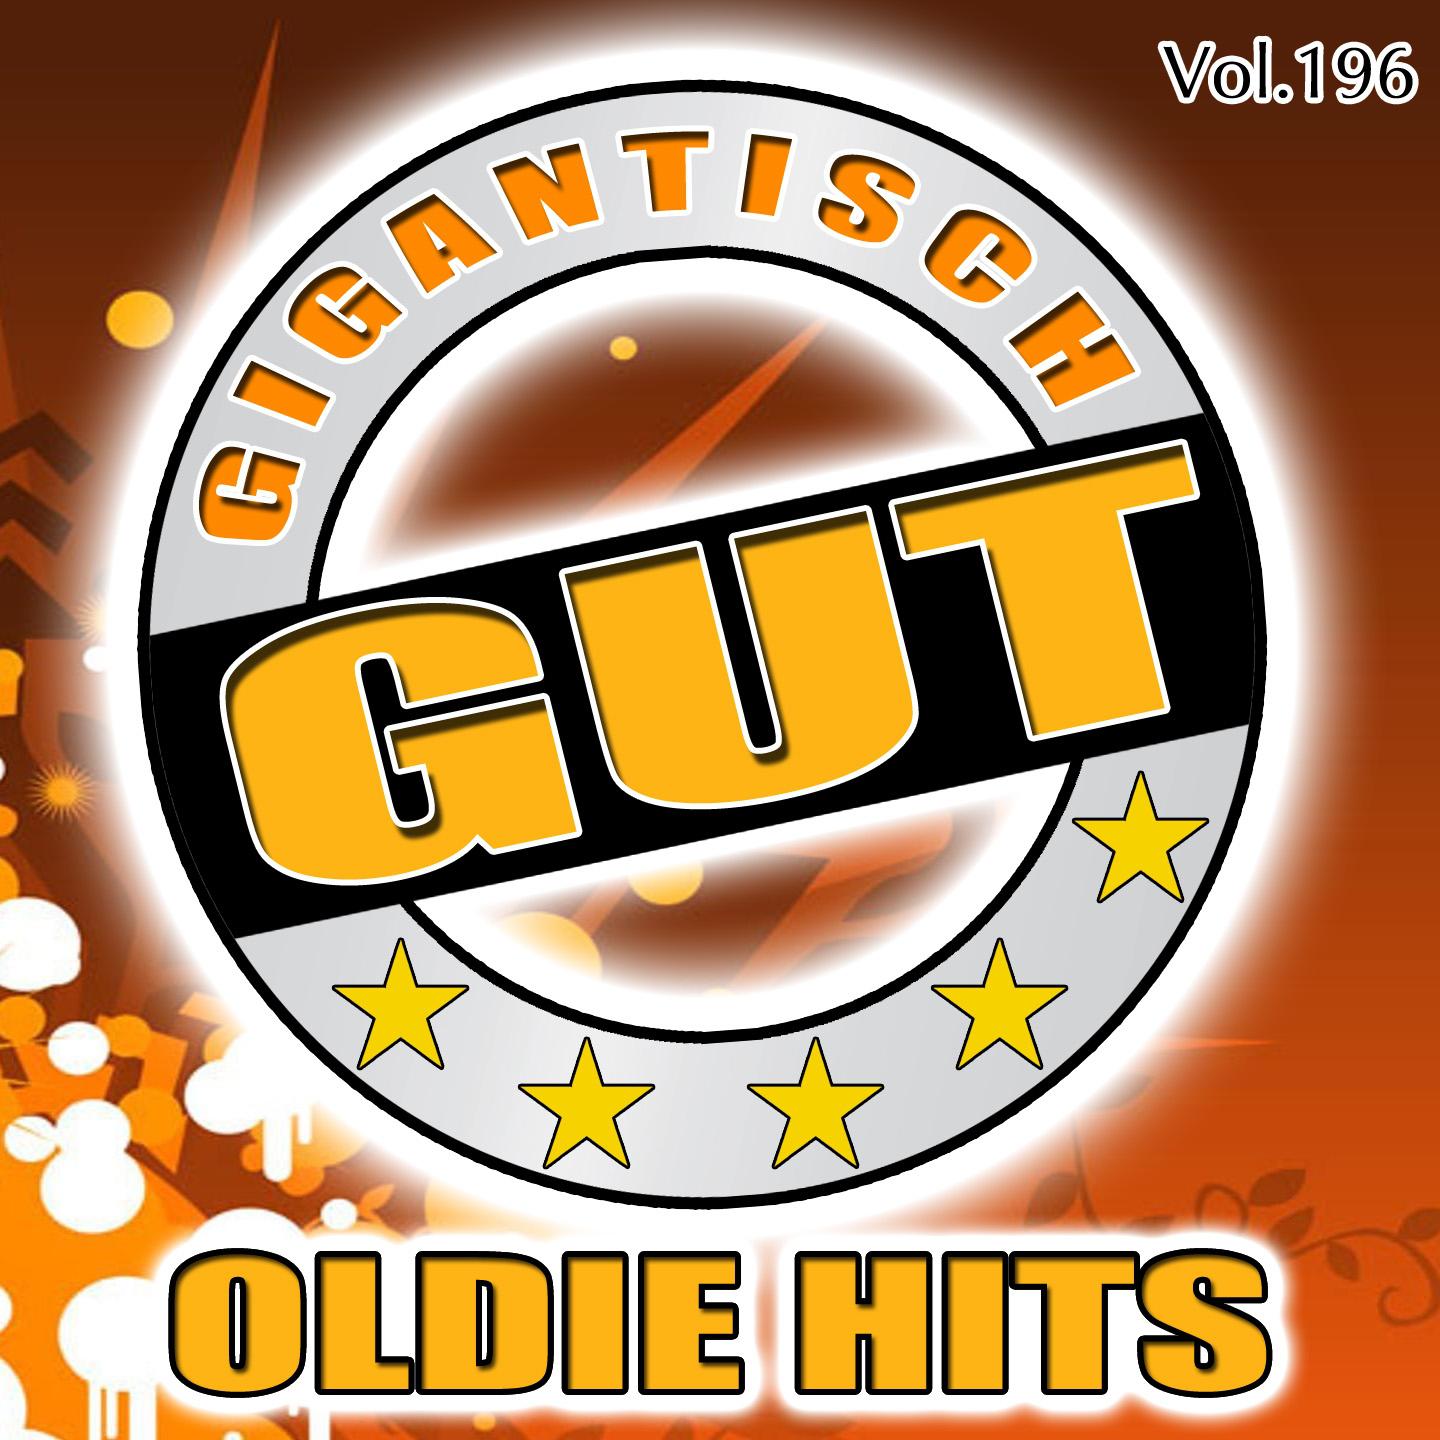 Gigantisch Gut: Oldie Hits, Vol. 196